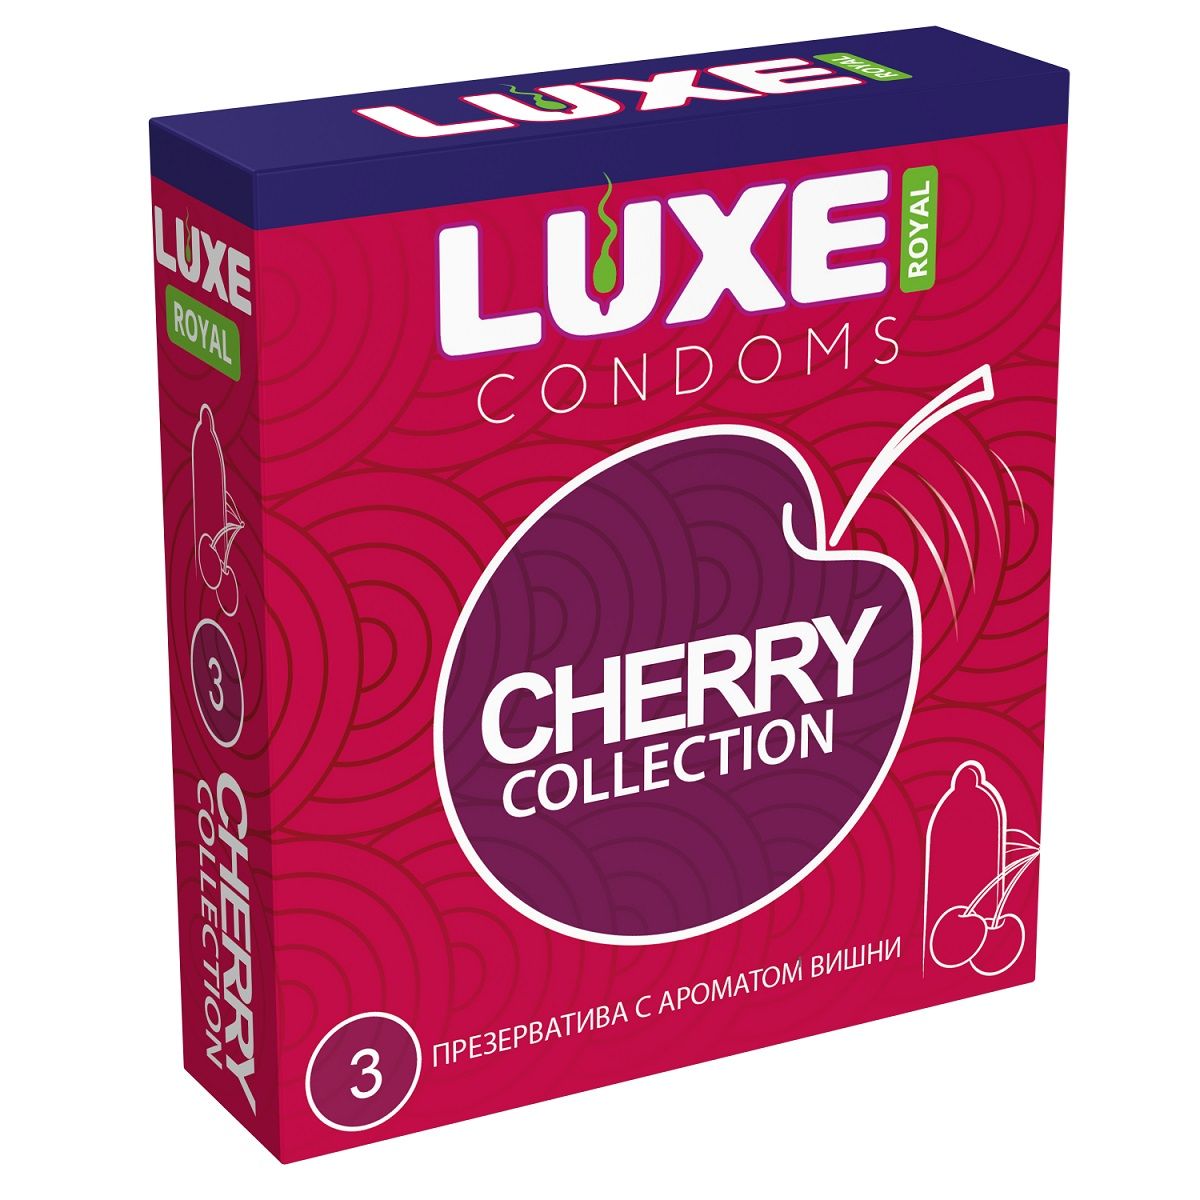 Высококачественные гладкие презервативы с ароматом вишни. Максимальное разнообразие и новые ощущения в ваших отношениях. В фирменной упаковке содержится 3 презерватива из тонкого латекса. Ширина - 52 мм.<br> Толщина стенок - 0,06 мм.<br> В упаковке - 3 шт.